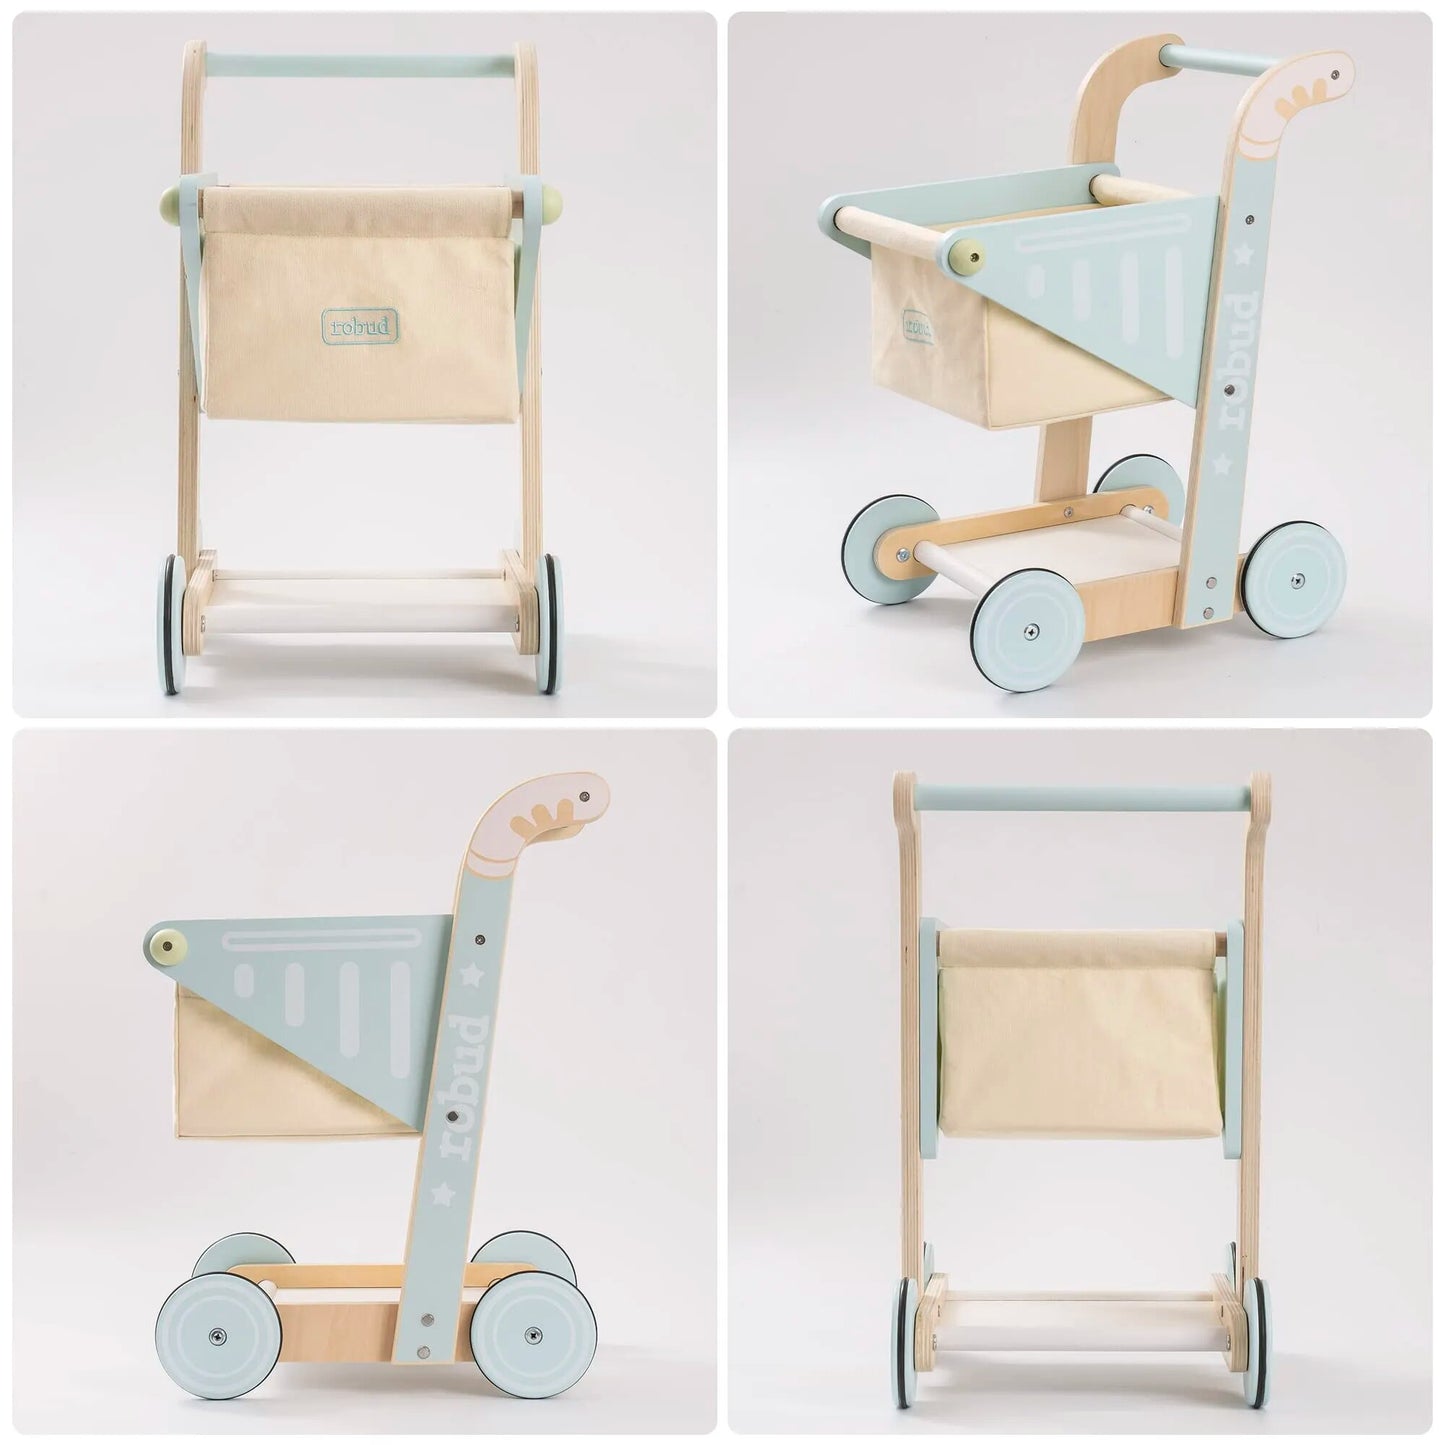 Robud Holz-Baby-Lauflernspielzeug, Einkaufswagen-Spielzeug für Kinder, Schiebespielzeug für Babys, die laufen lernen, für Kleinkinder-Puppenwagen 